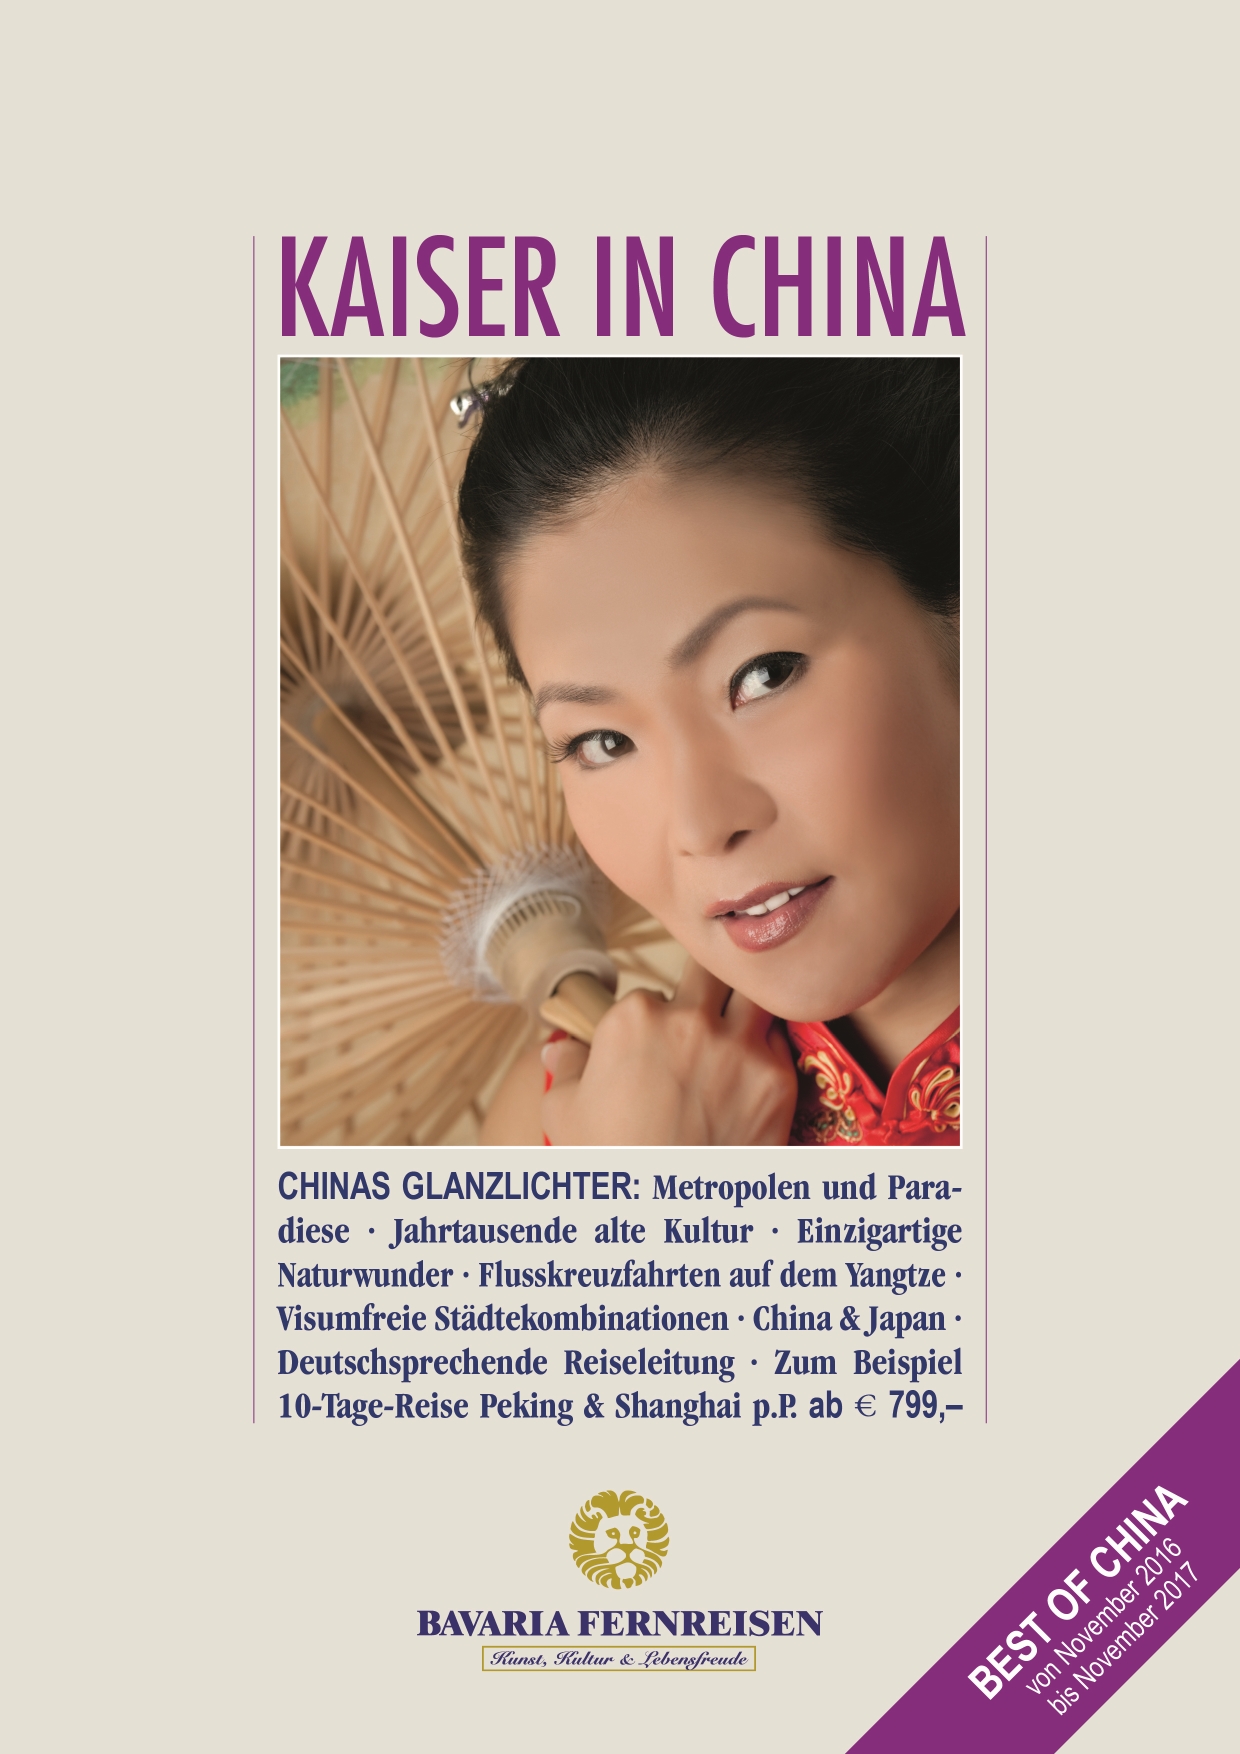 Bavaria Katalog-2017 China 171016 Titel 01